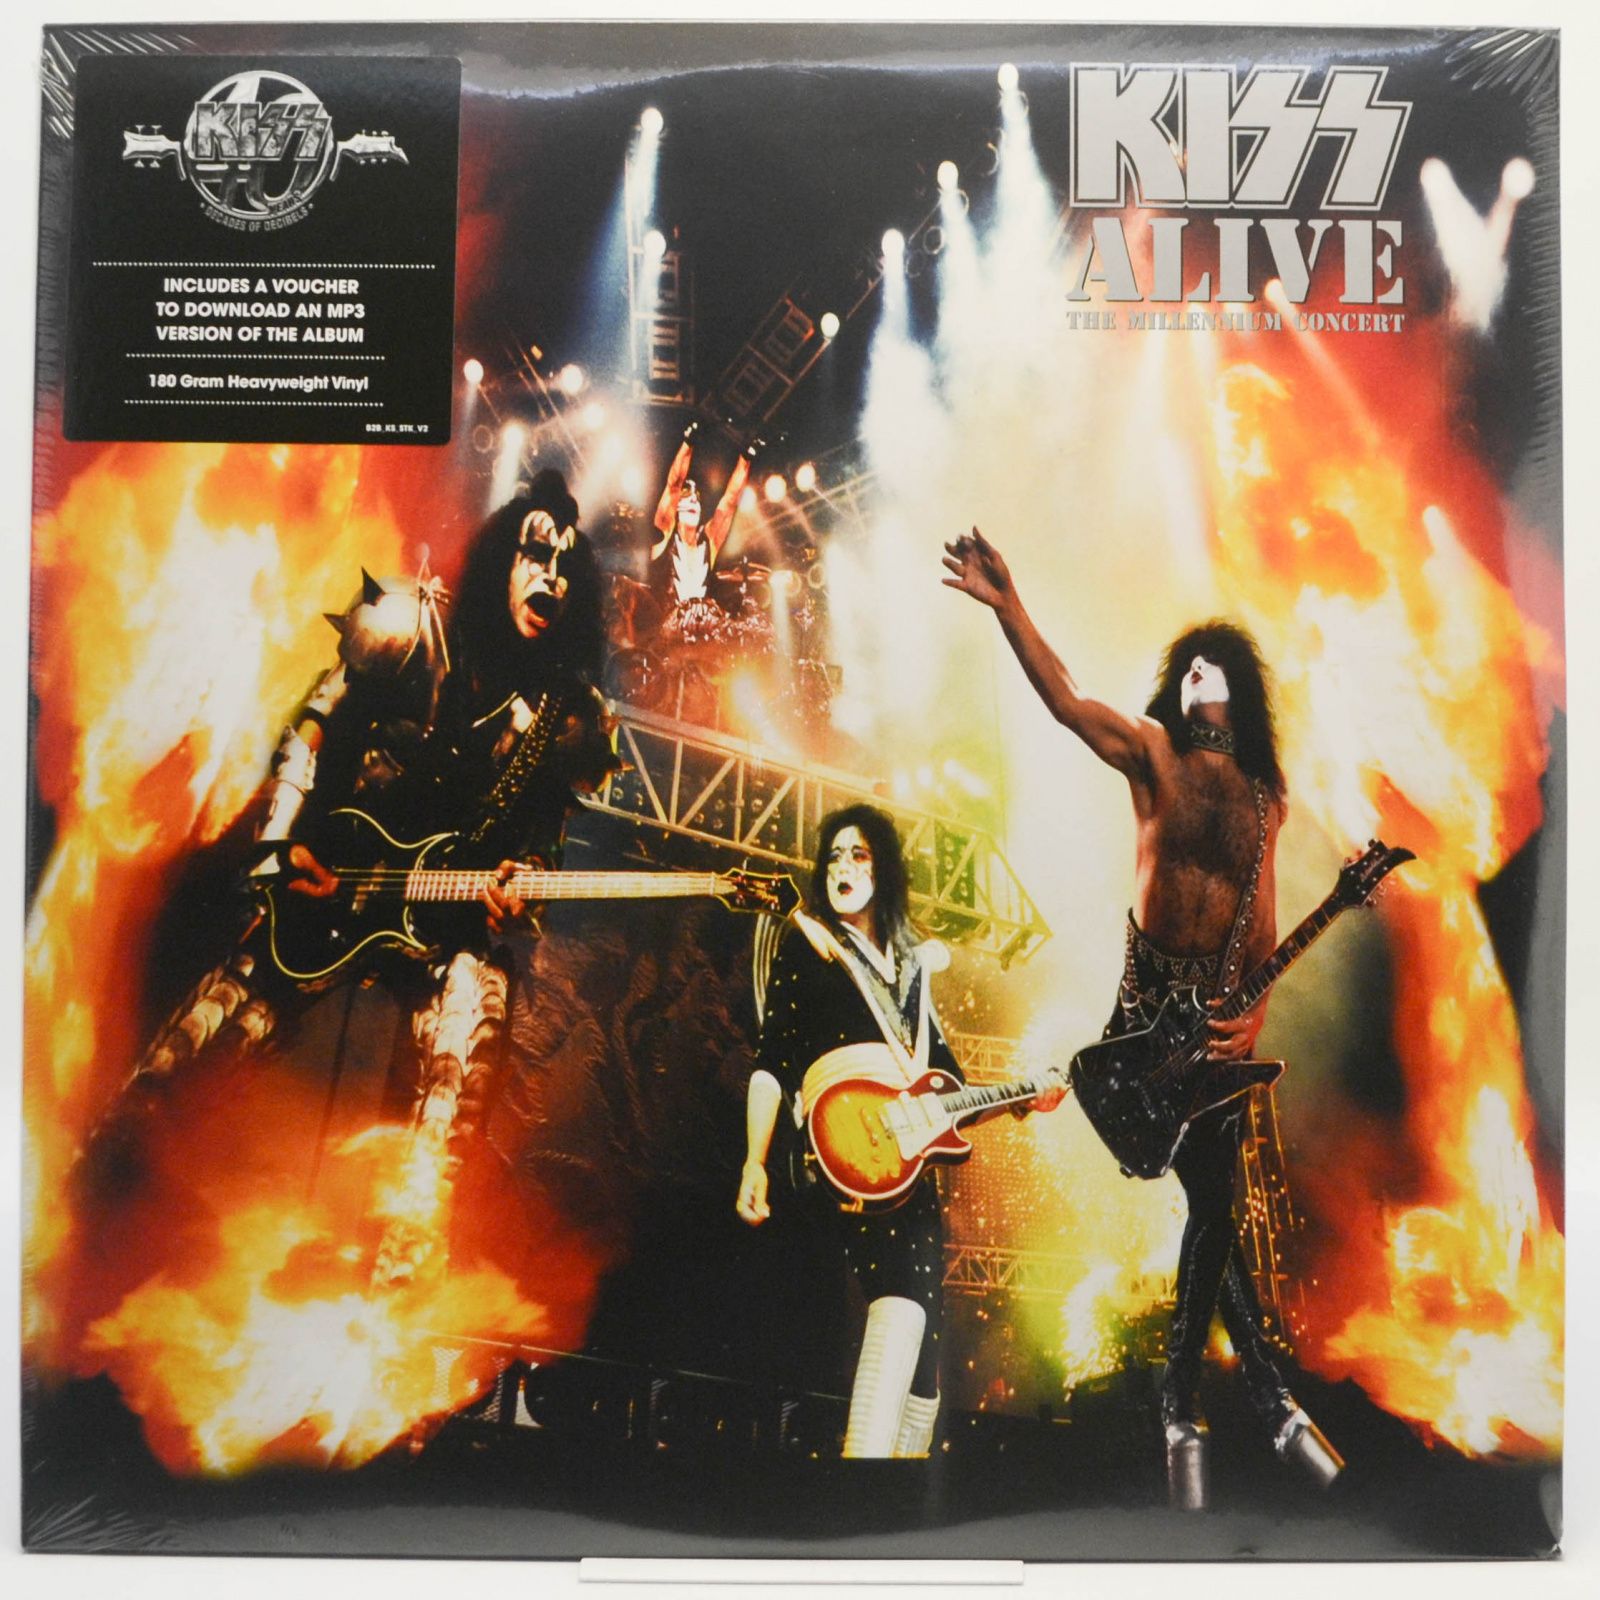 Концерты купить диск. "Alive! The Millennium Concert". Kiss обложка. Пластинка Kiss. Обложки виниловых пластинок рок групп.